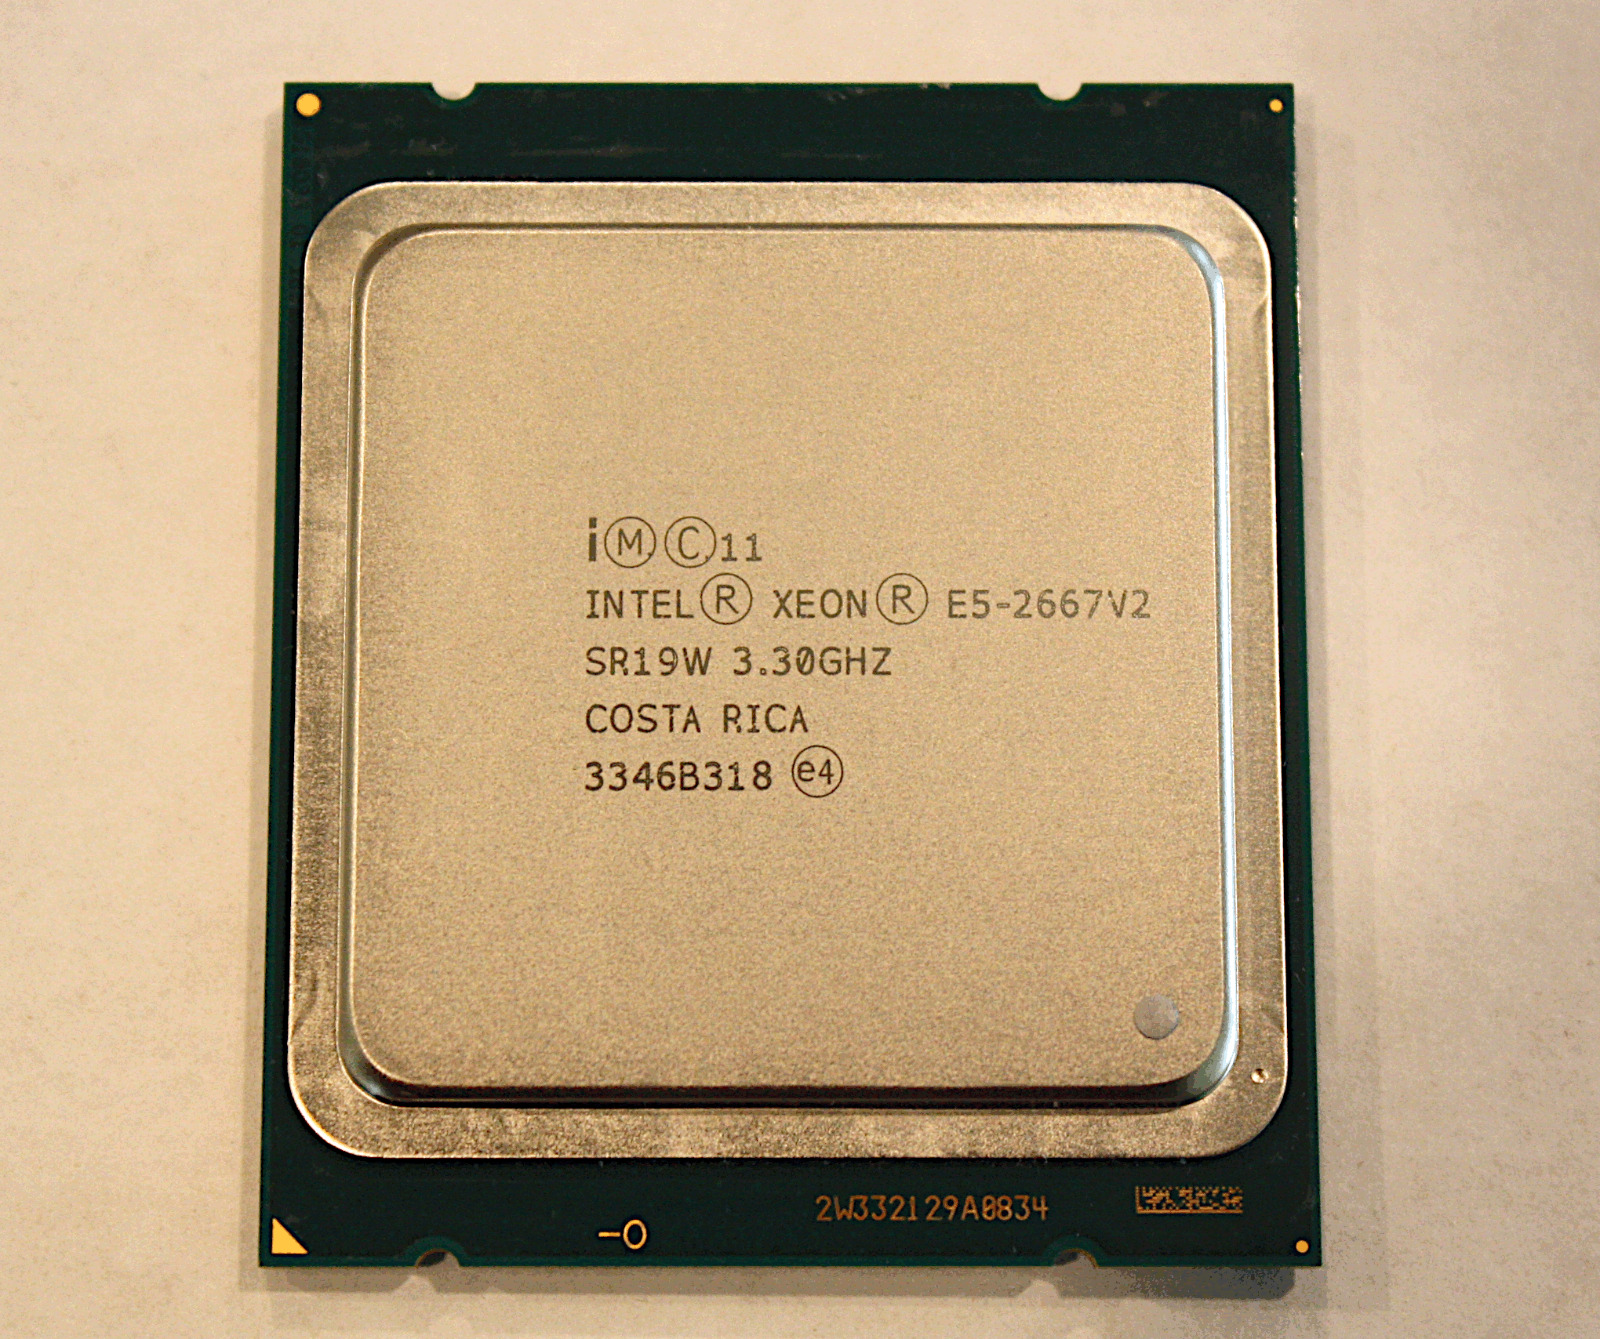 Intel Xeon E5-2667v2 8-Core 3.3GHz 25Mb 8.0GT/s FCLGA2011 CPU - SR19W - GRADE A